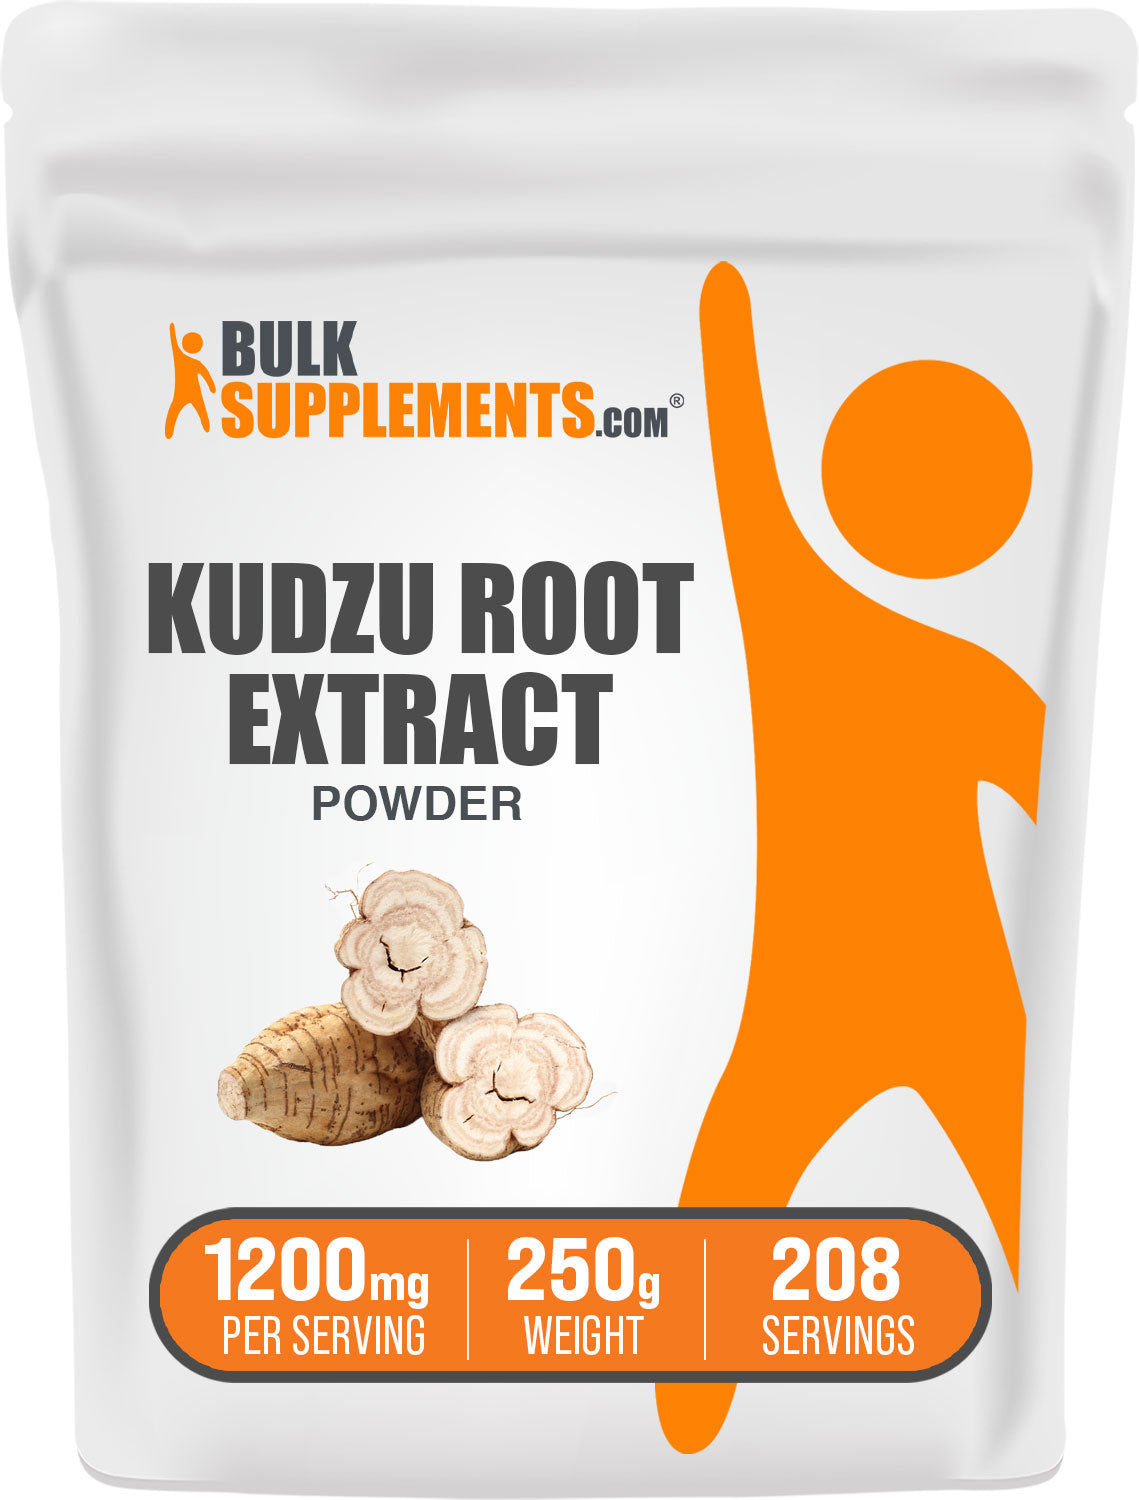 Kudzu Root Extract Powder 250g